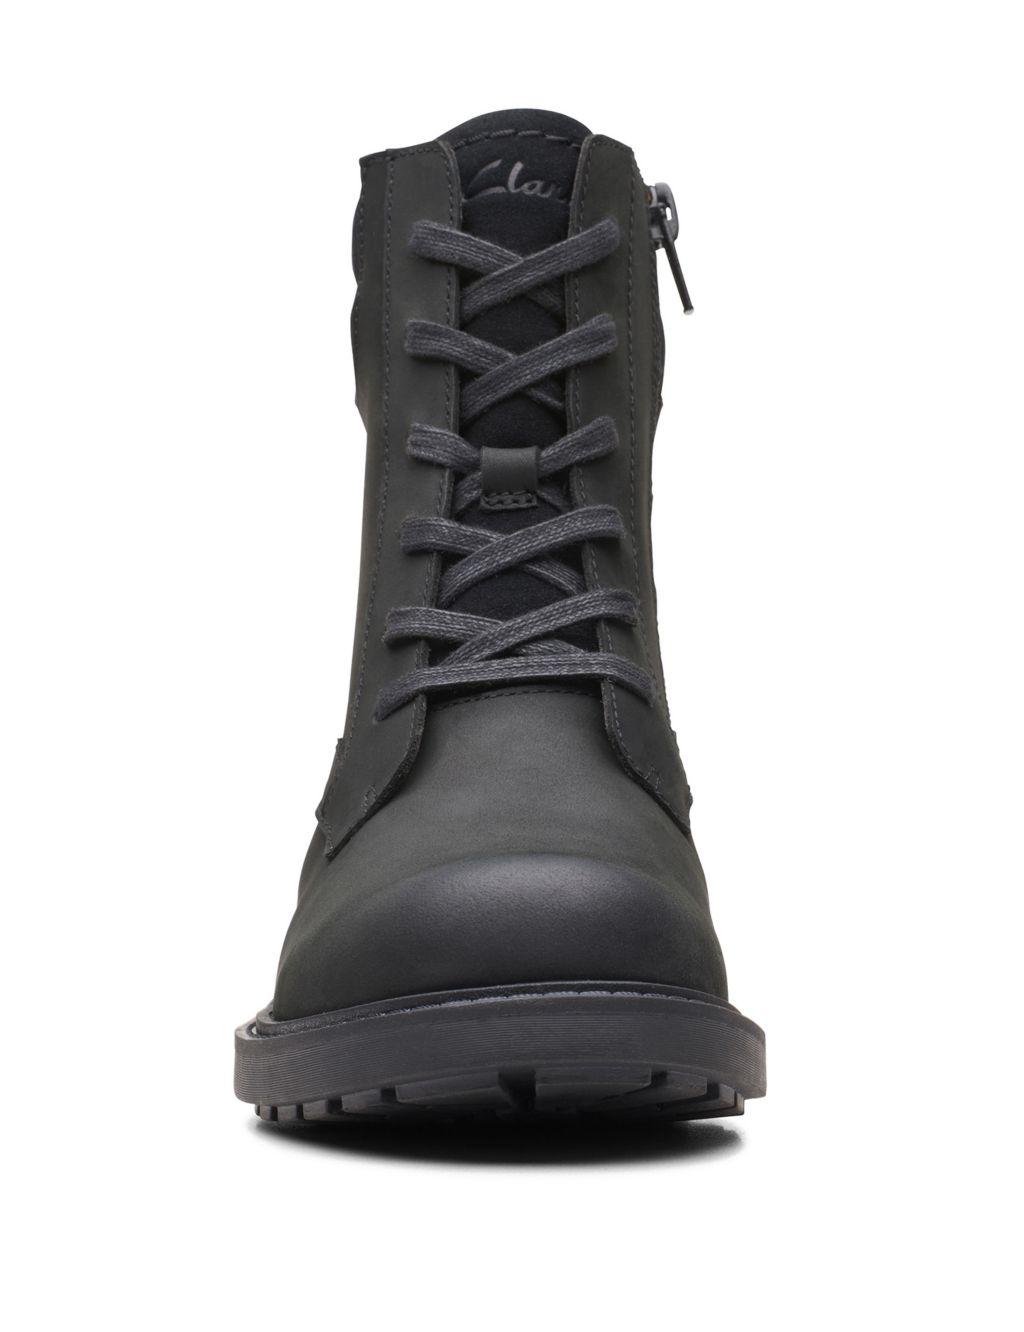 Leather Biker Block Heel Boots image 3